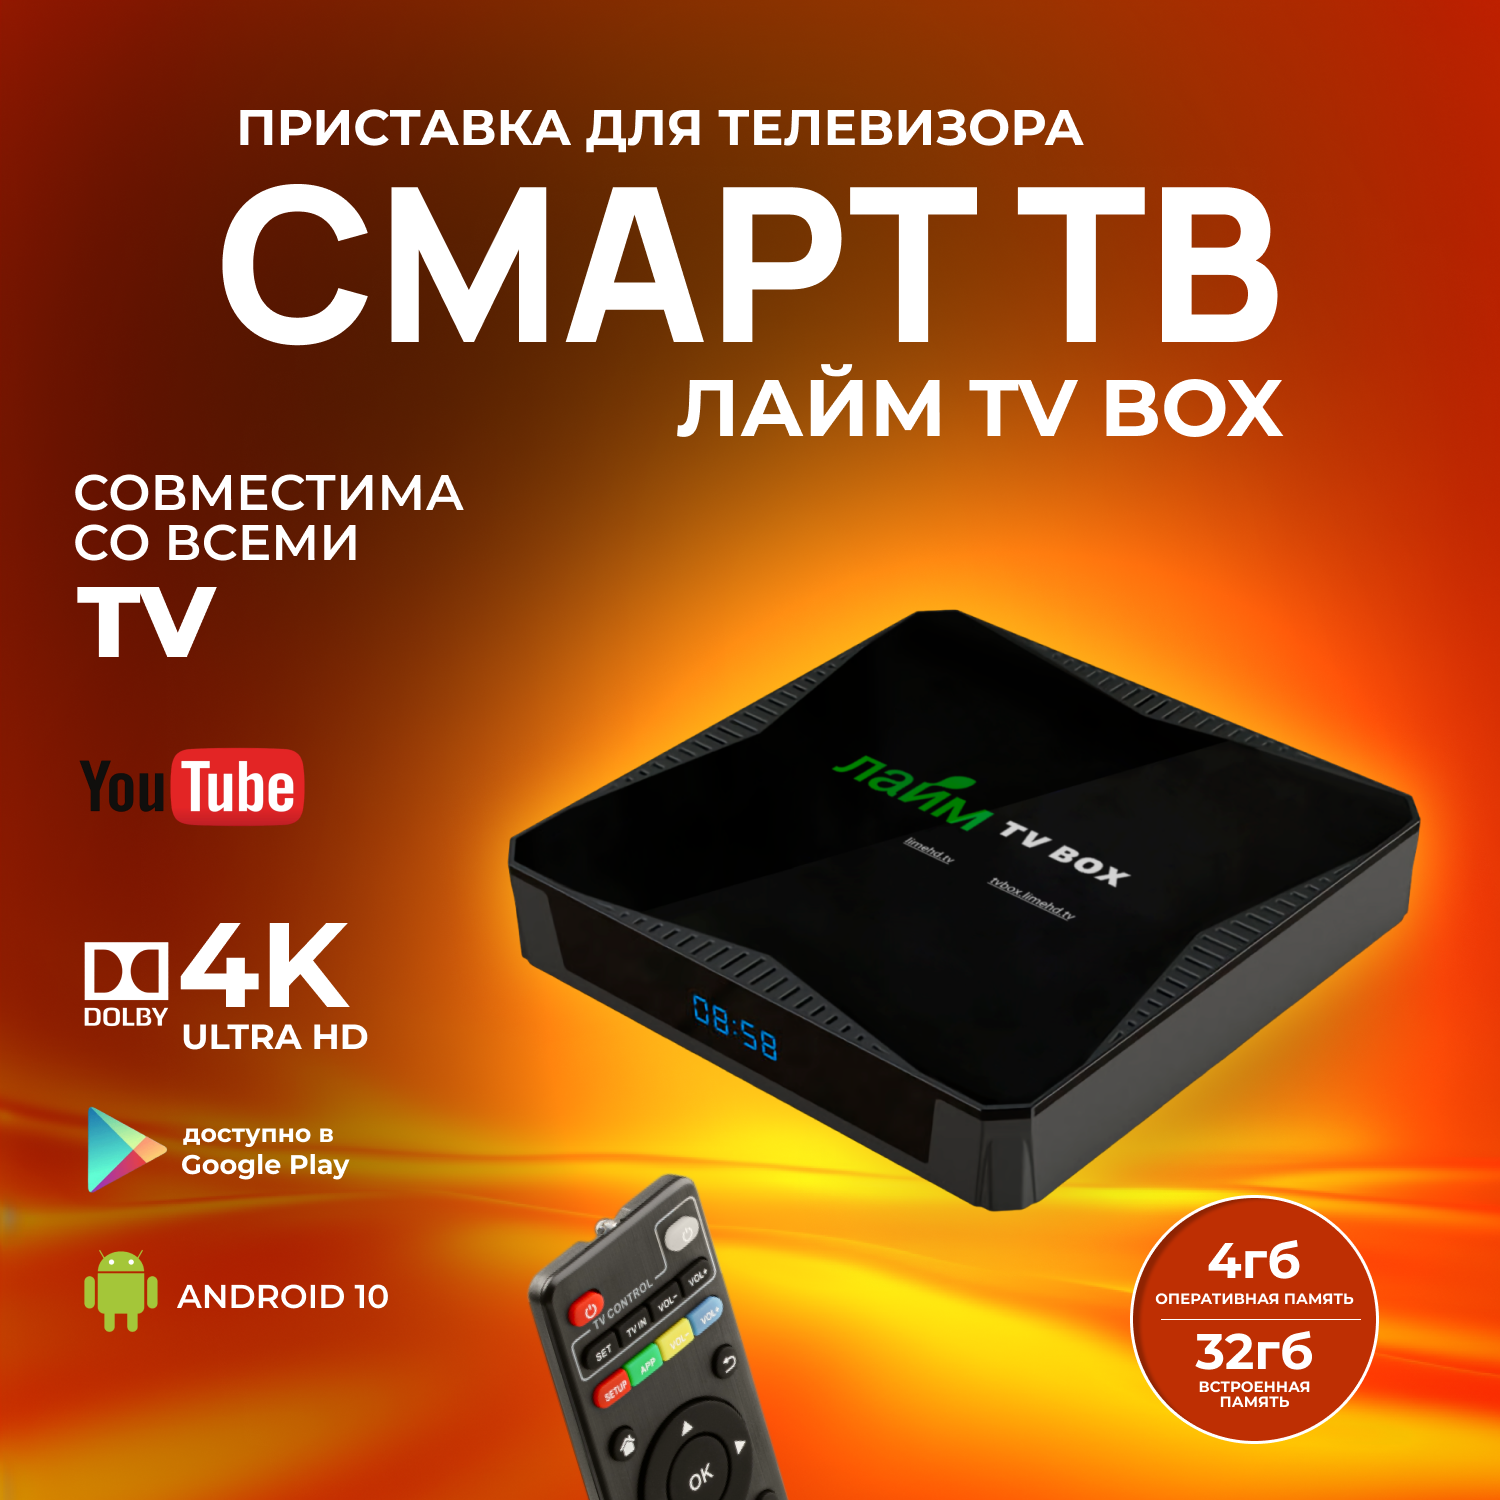 Лайм TV Box X96Q MAX / Андроид ТВ приставка c WI FI/ 4К / Смарт ТВ / Медиаплеер 4/32Гб / + 300 ТВ-каналов бесплатно /приставка для цифрового тв